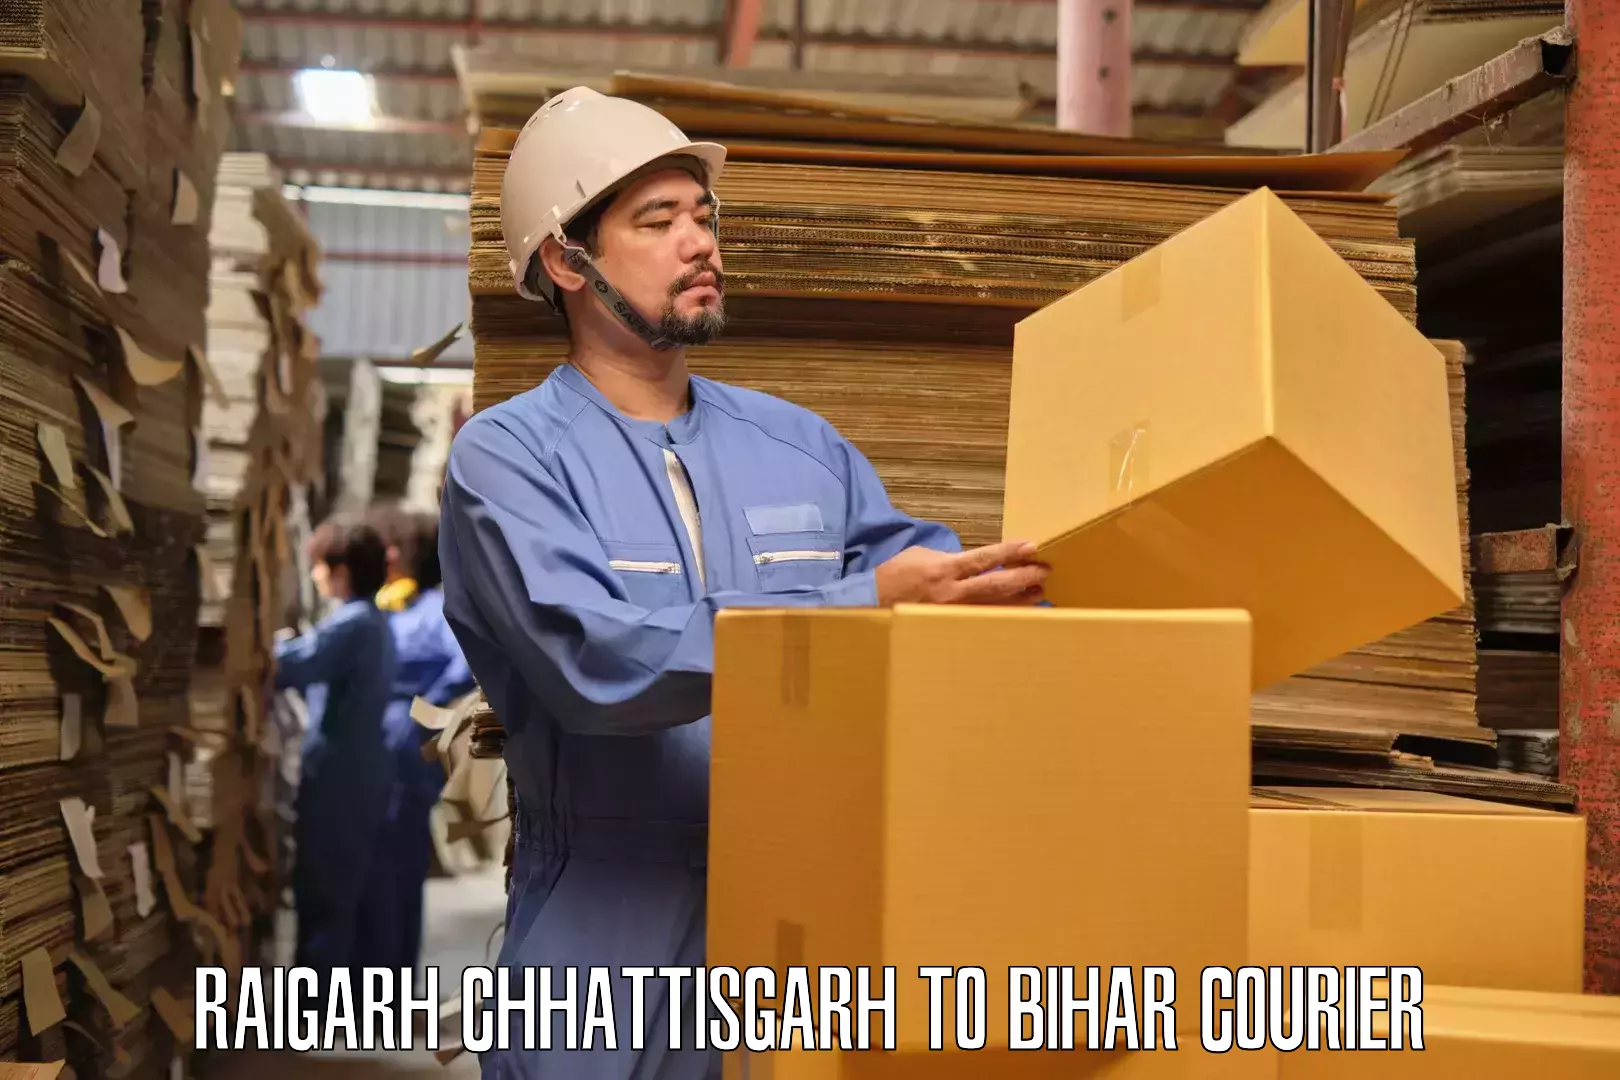 Household goods movers Raigarh Chhattisgarh to Birpur